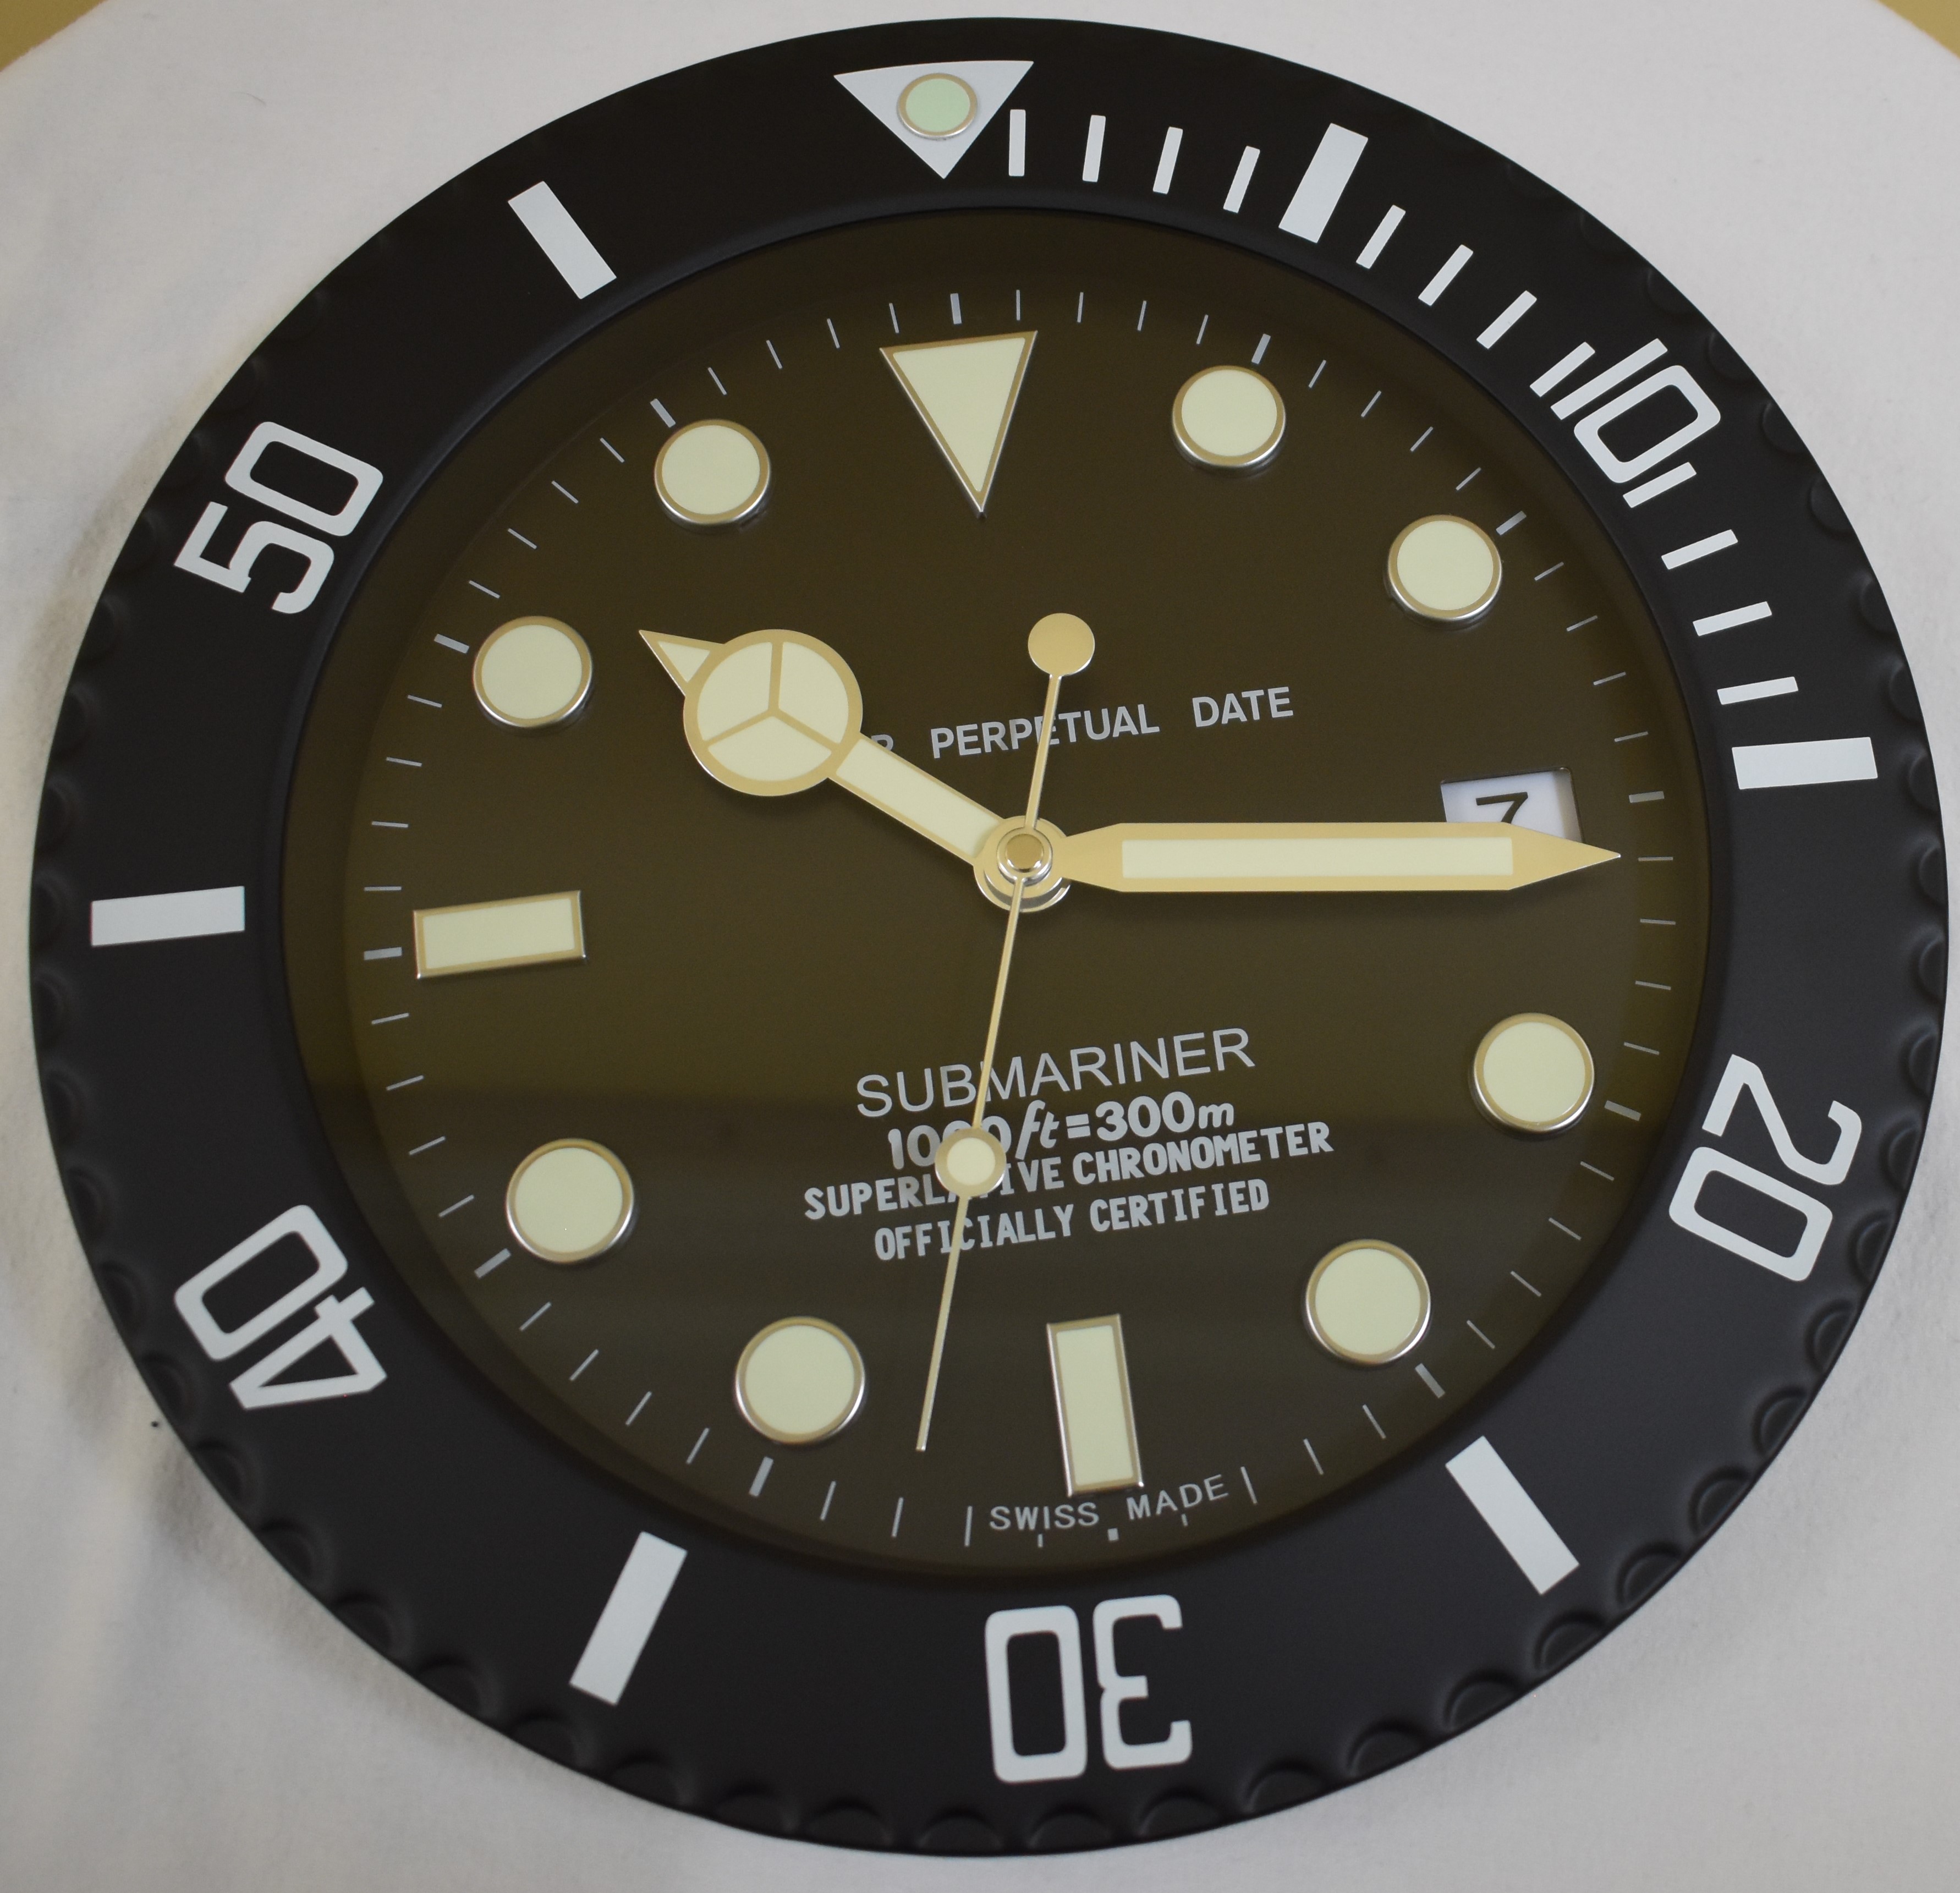 34 cm Black body Black Dial clock - Image 2 of 2